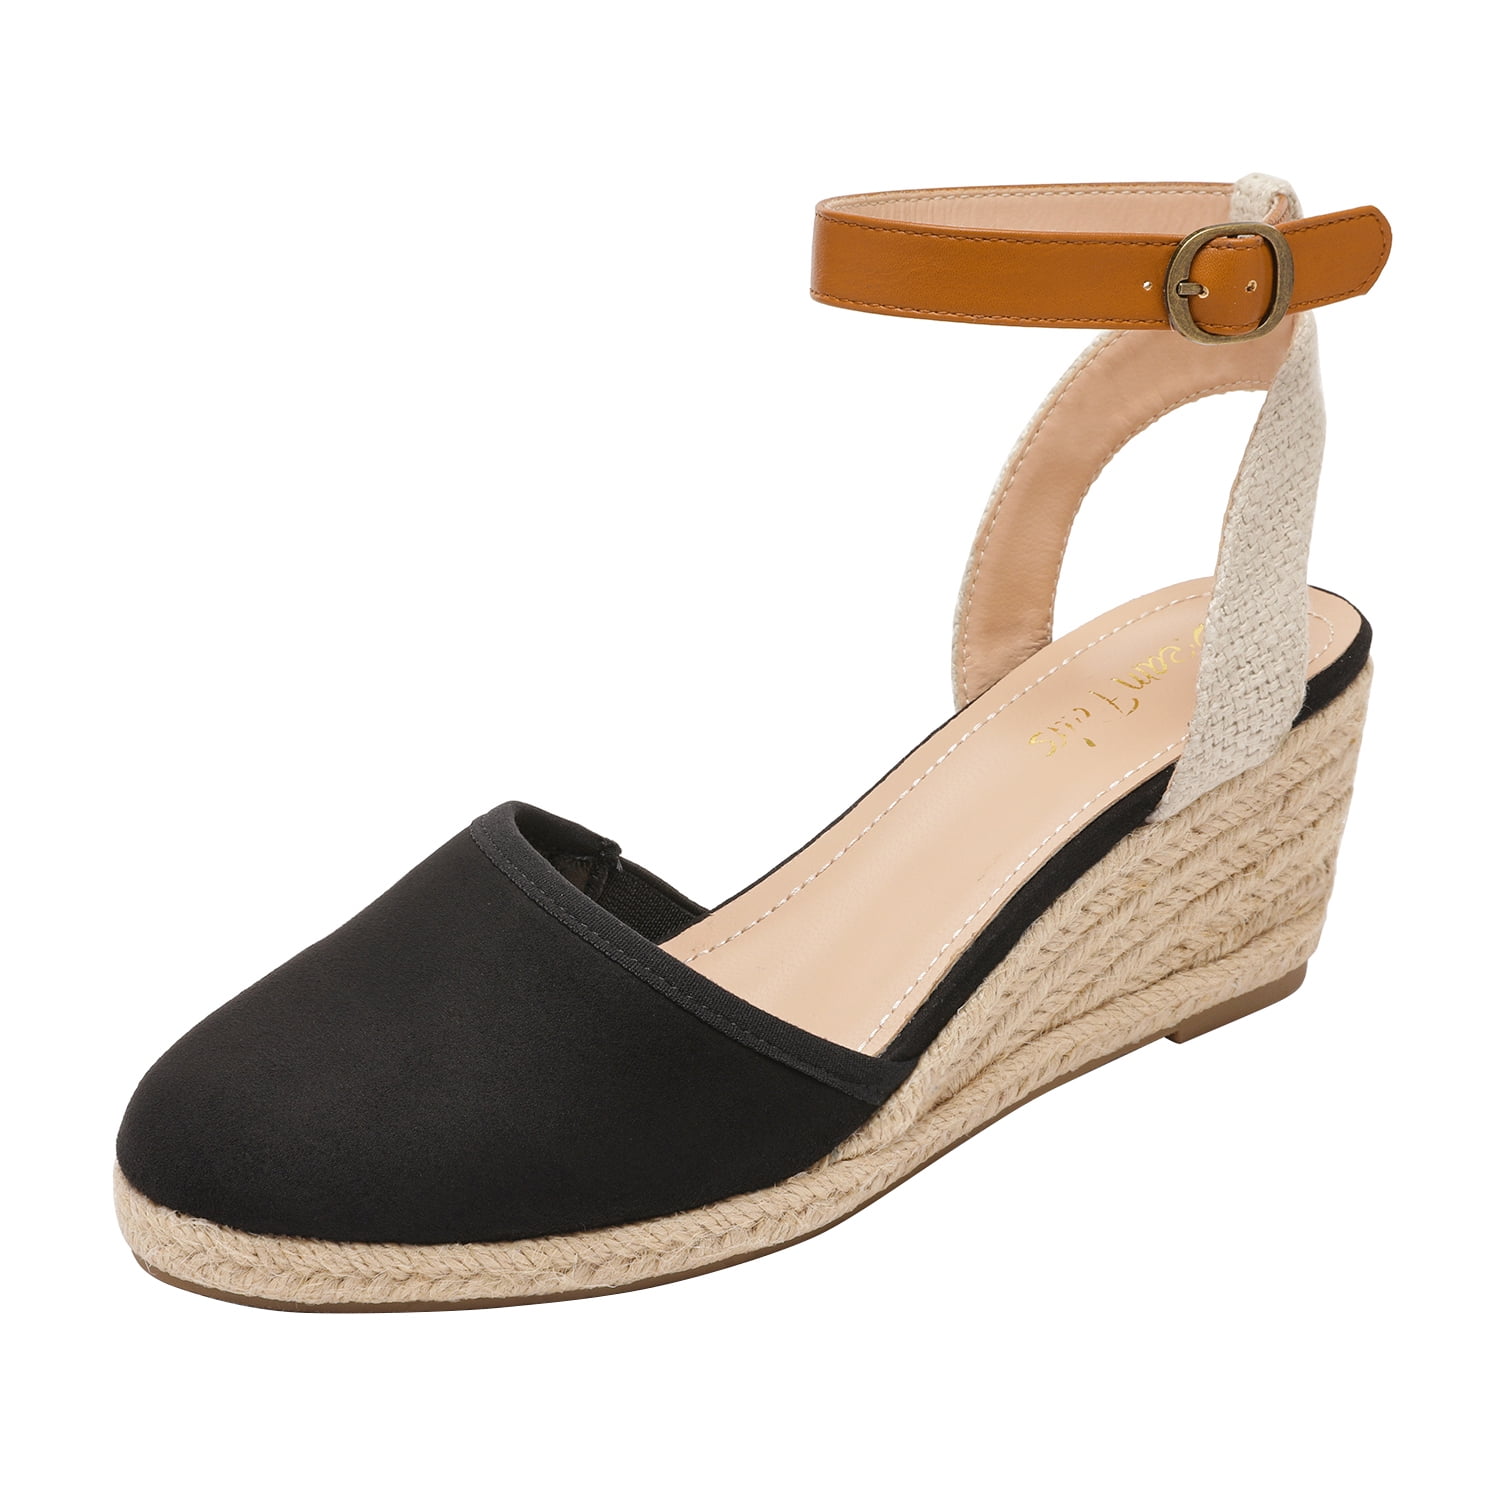 Dream Pairs Women's Ankle Strap Sandals Espadrilles Wedge Sandals Platform Shoe Amanda-3 Black Size 5 - Walmart.com